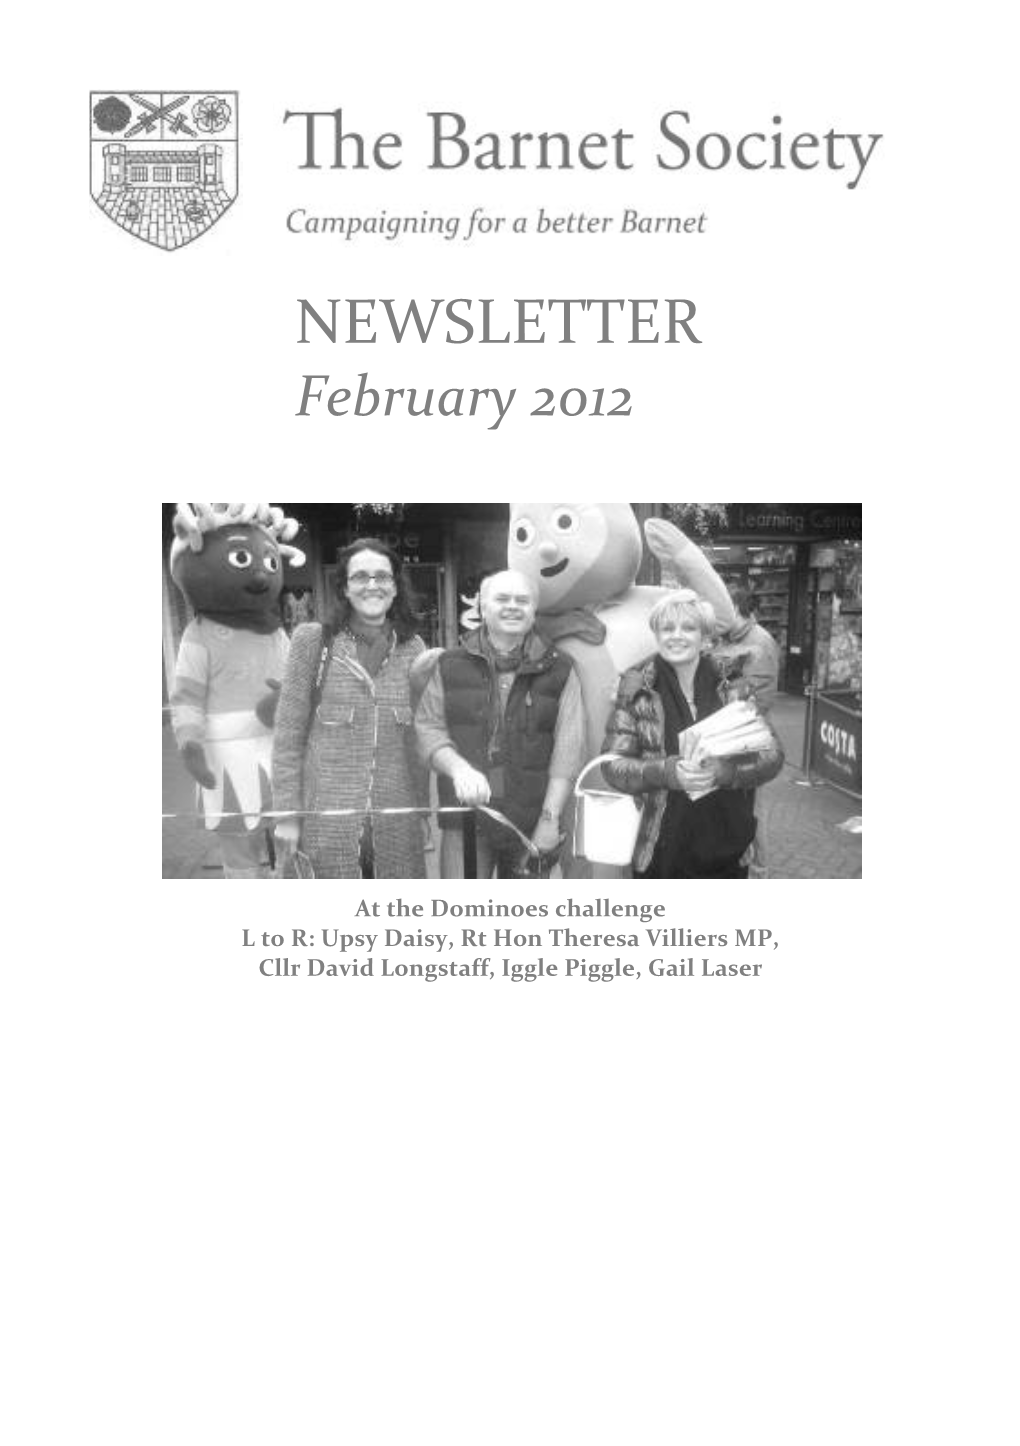 NEWSLETTER February 2012